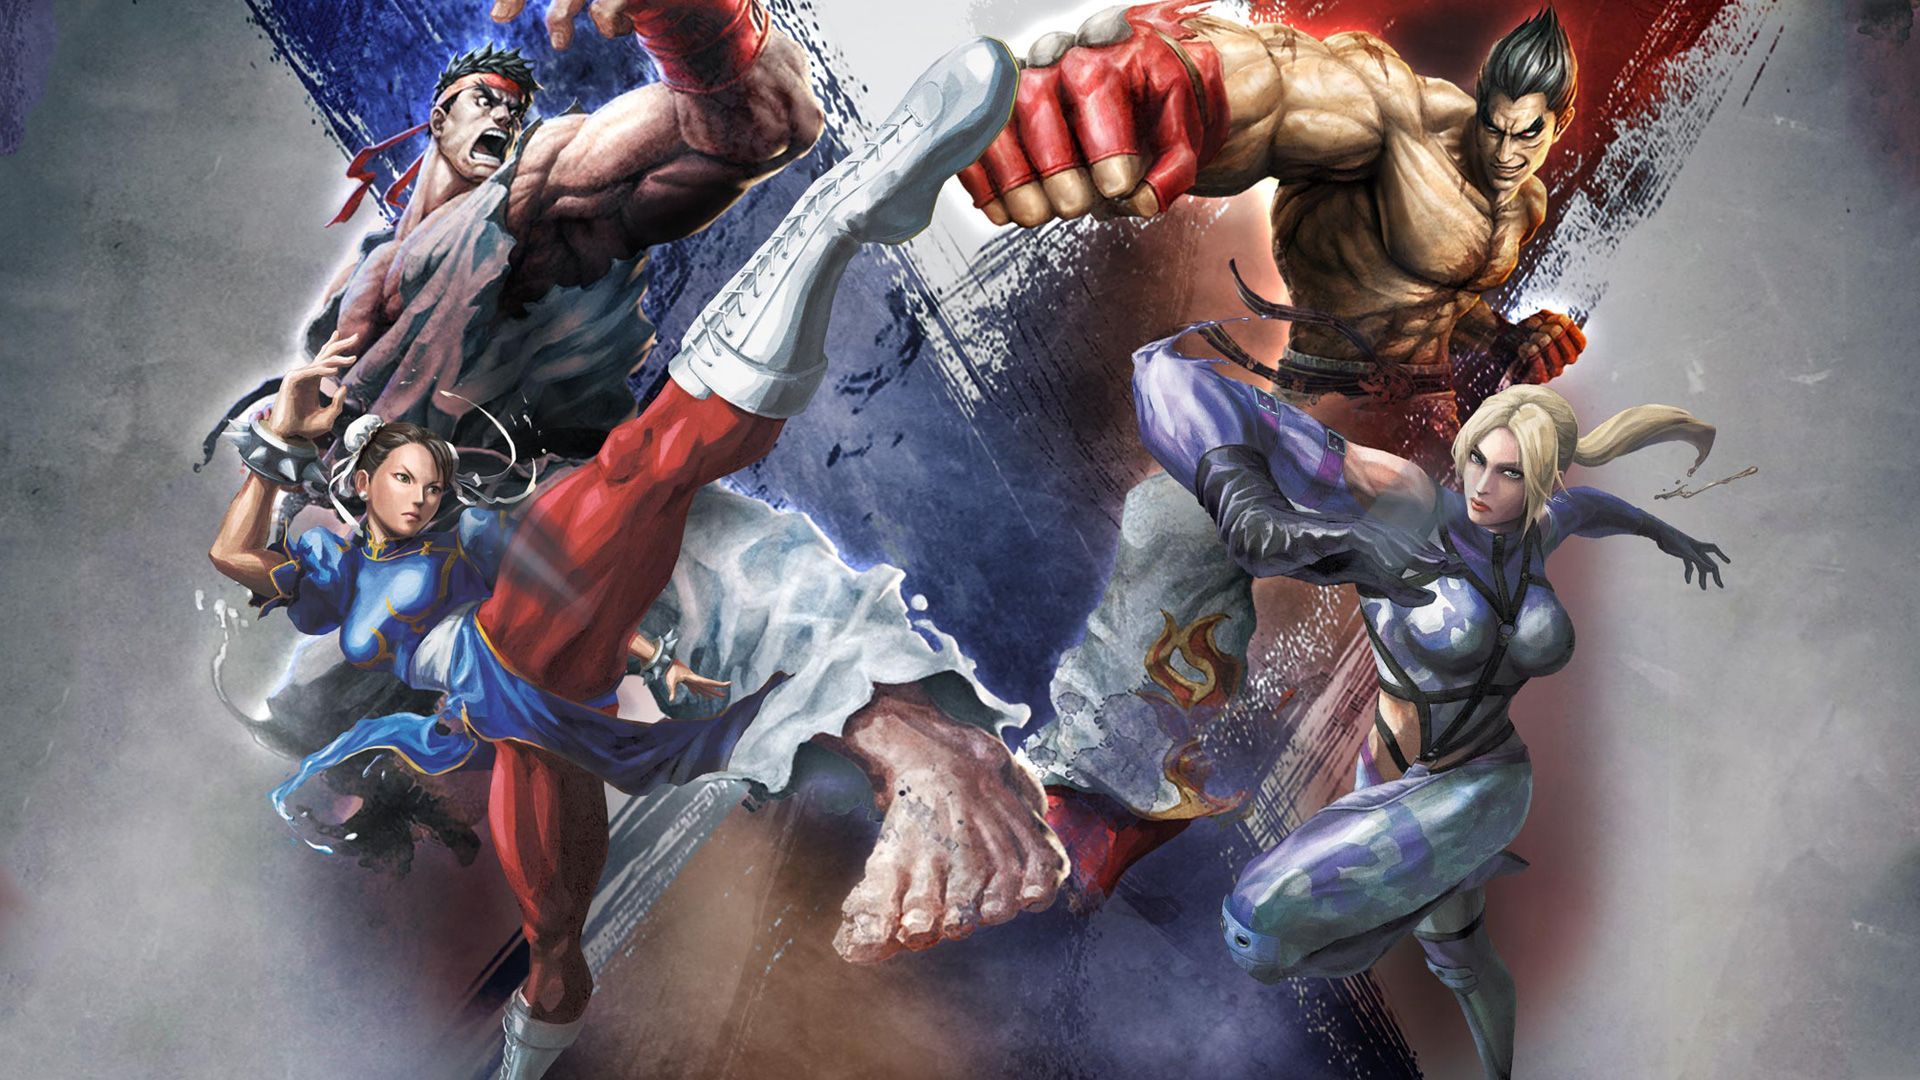 Street Fighter X Tekken HD Wallpapers - wallpapers - TechMynd ...